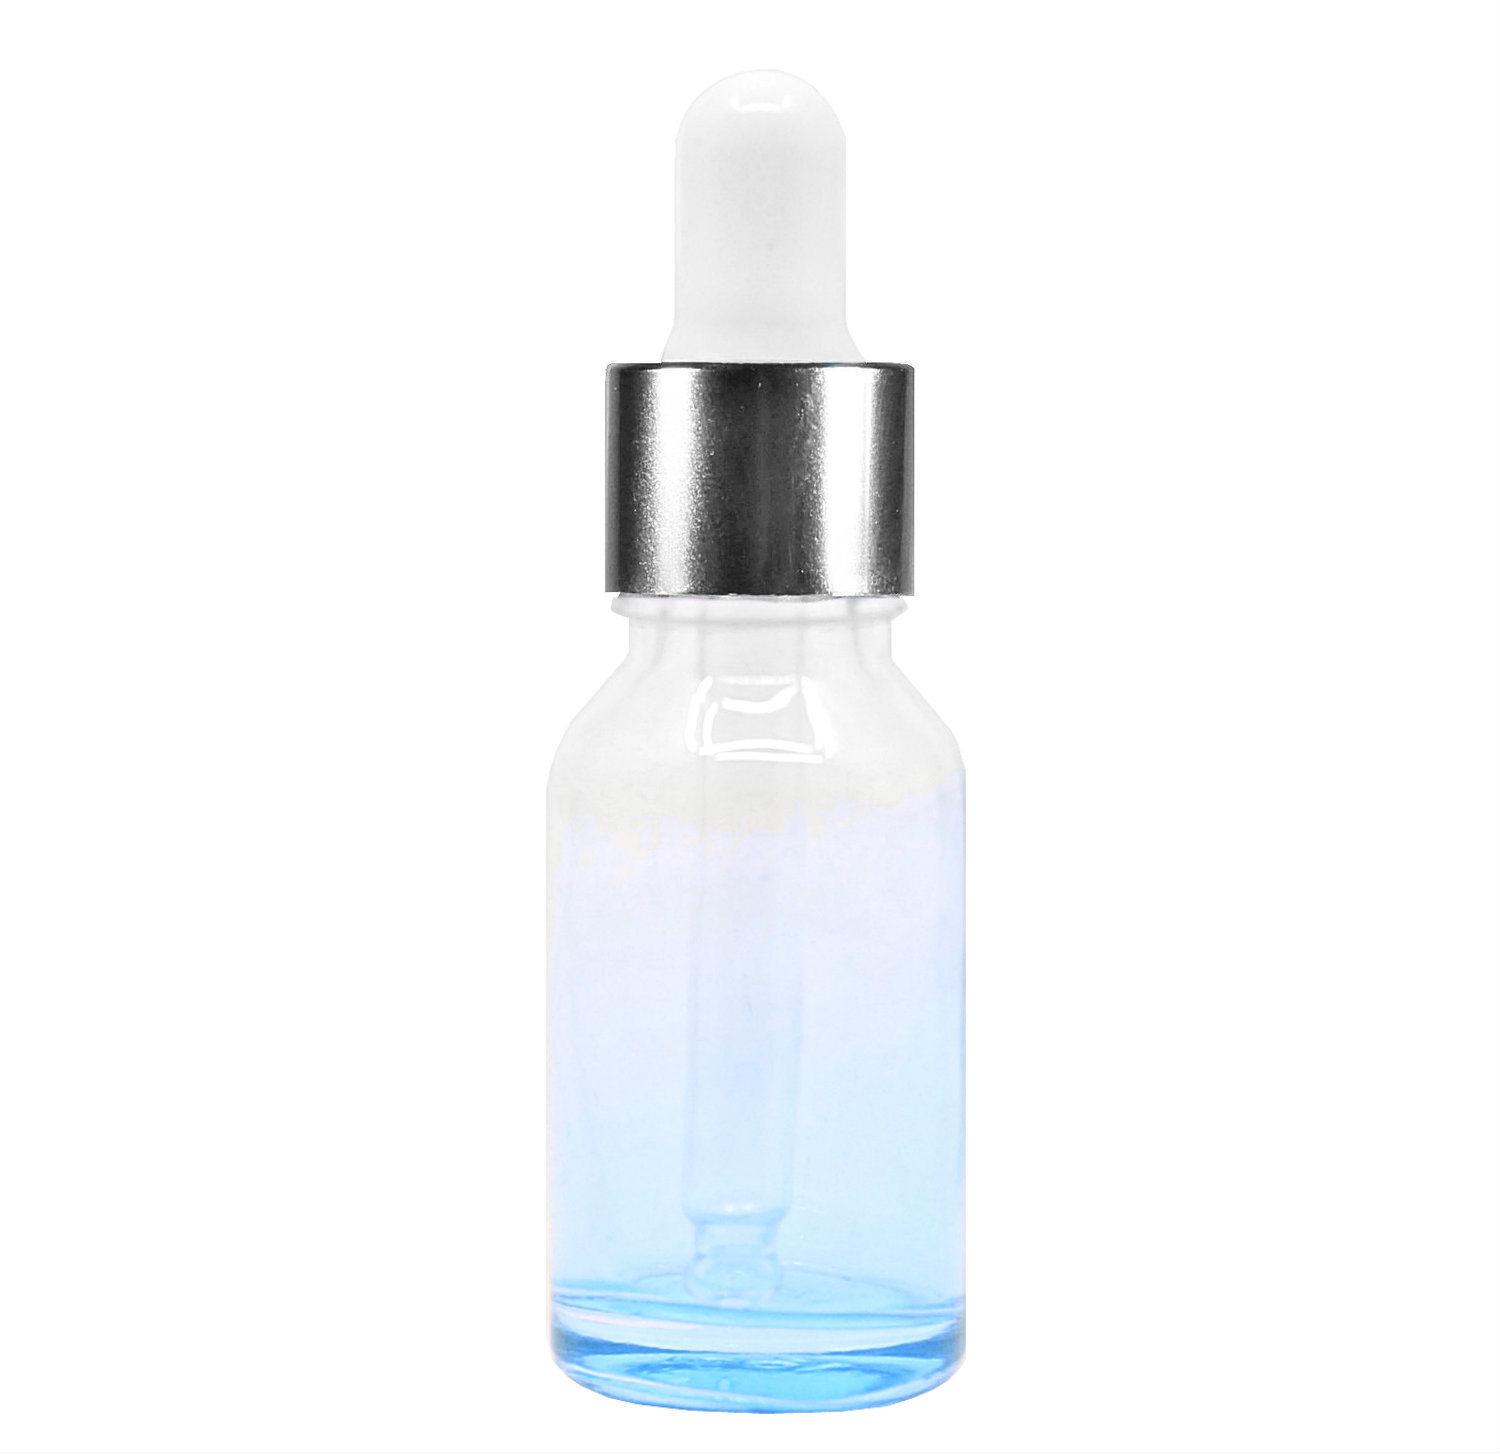 15ml glass dropper bottle (Blue)